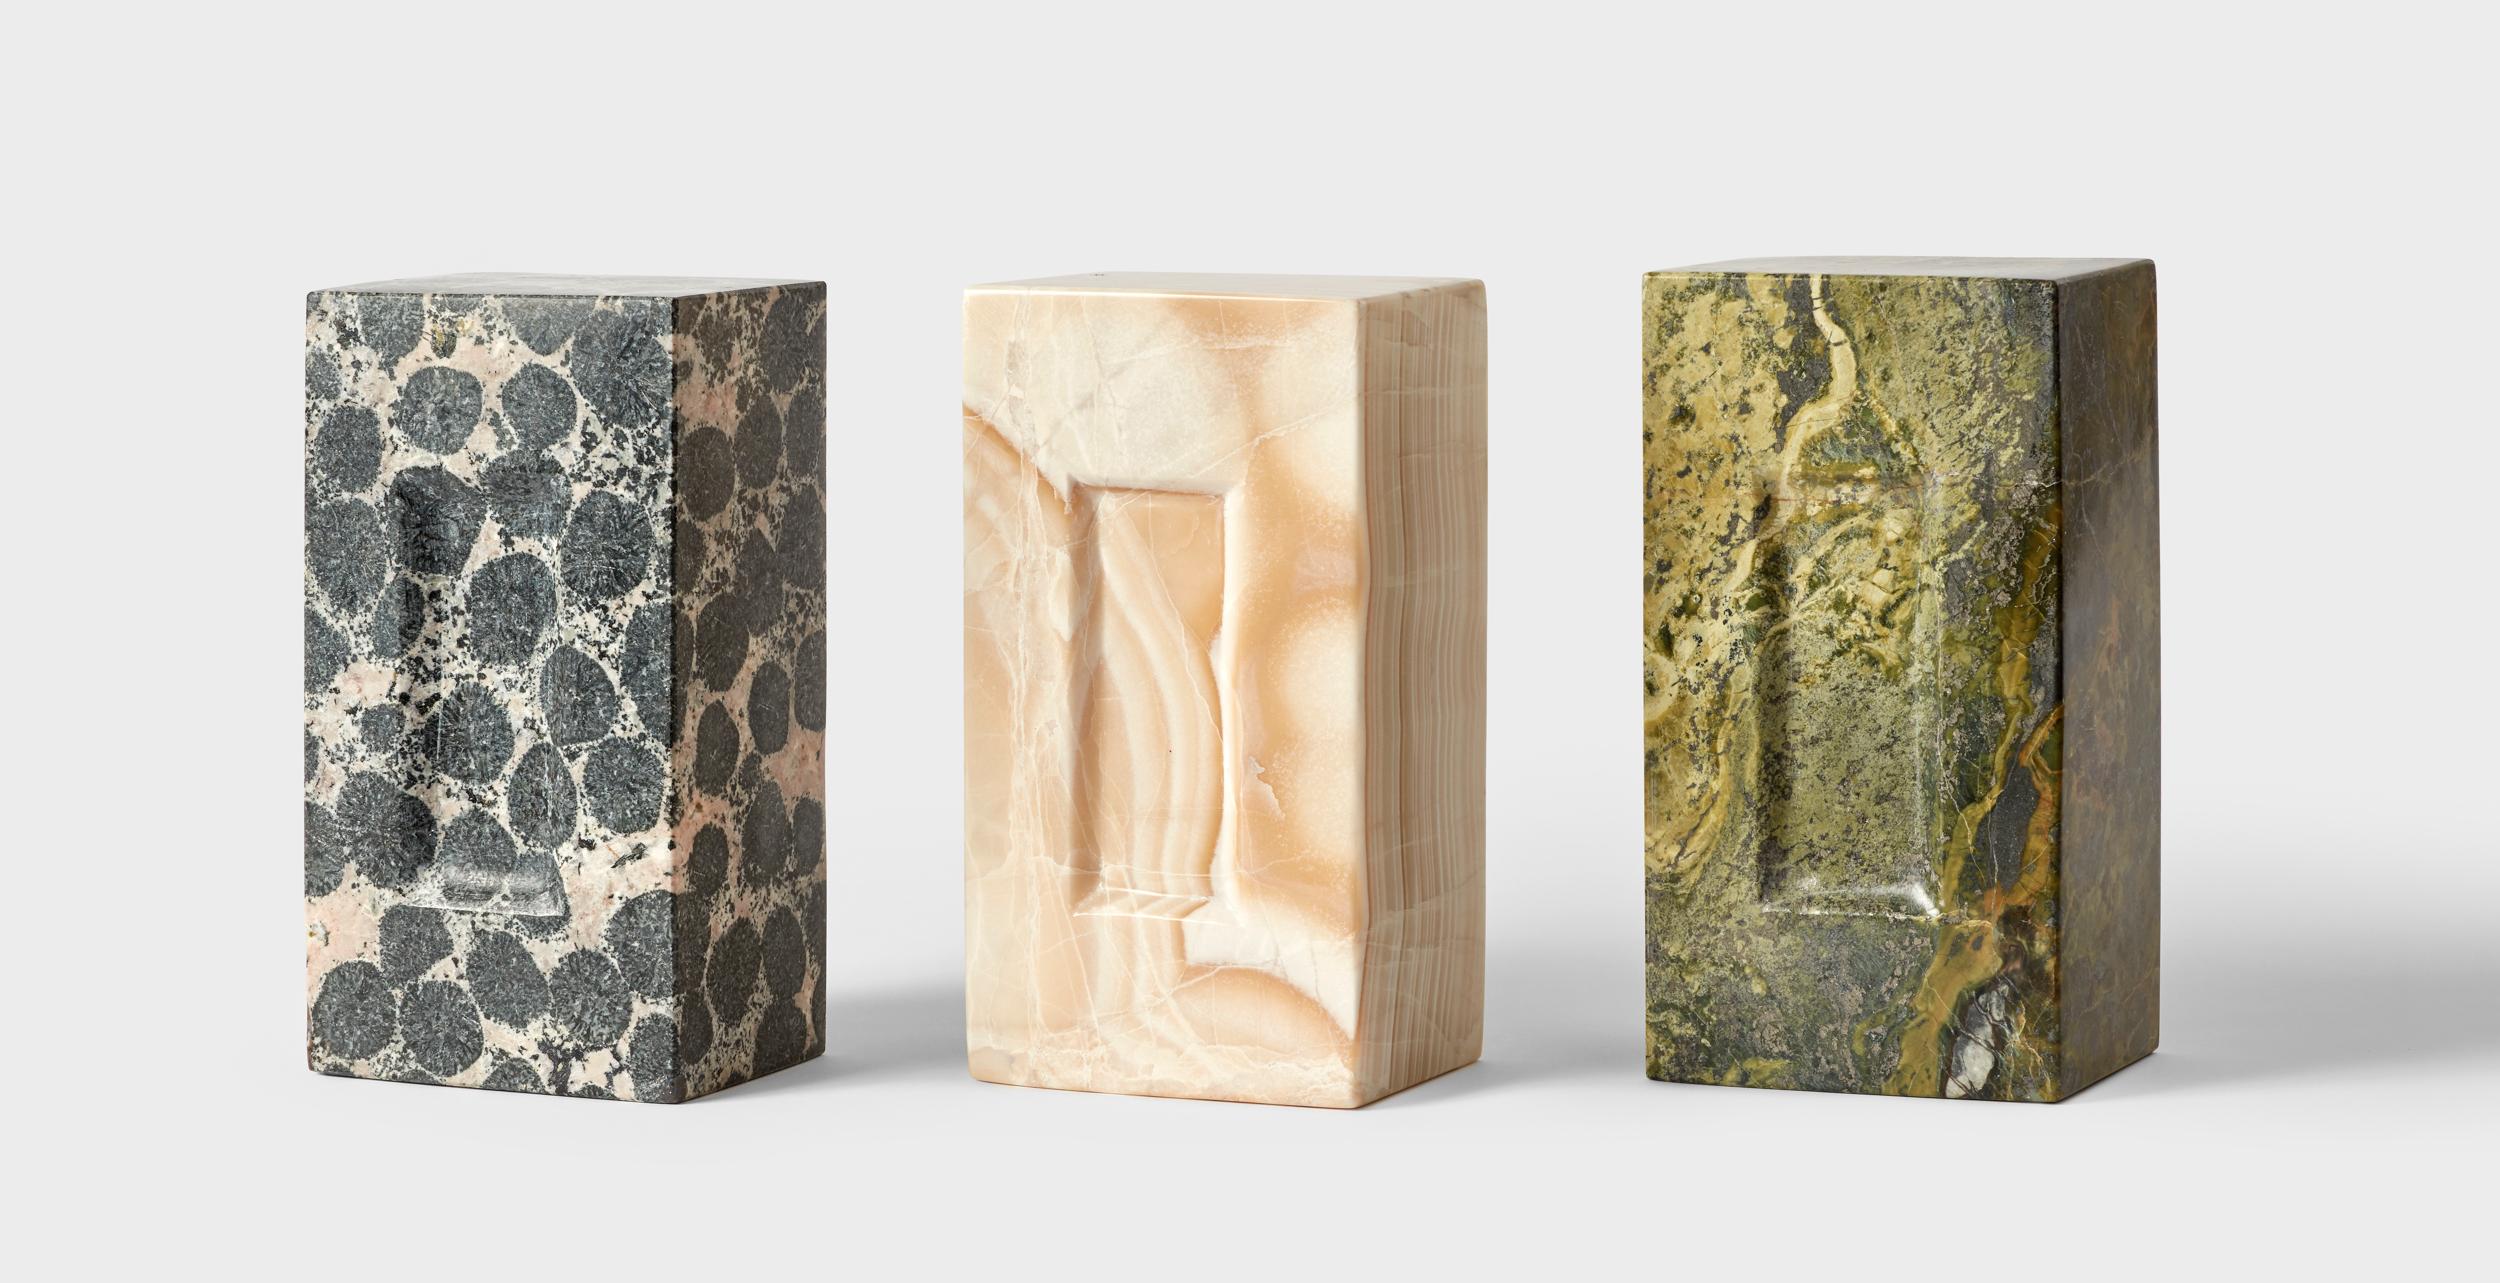 Ensemble de 3 briques par Estudio Rafael Freyre
Dimensions : L 12,5 D 9 x H 23 cm
Matériaux : Pierres des Andes
Également disponible : Autres finitions disponibles.

La brique est un élément constructif générique qui fait partie de l'imaginaire